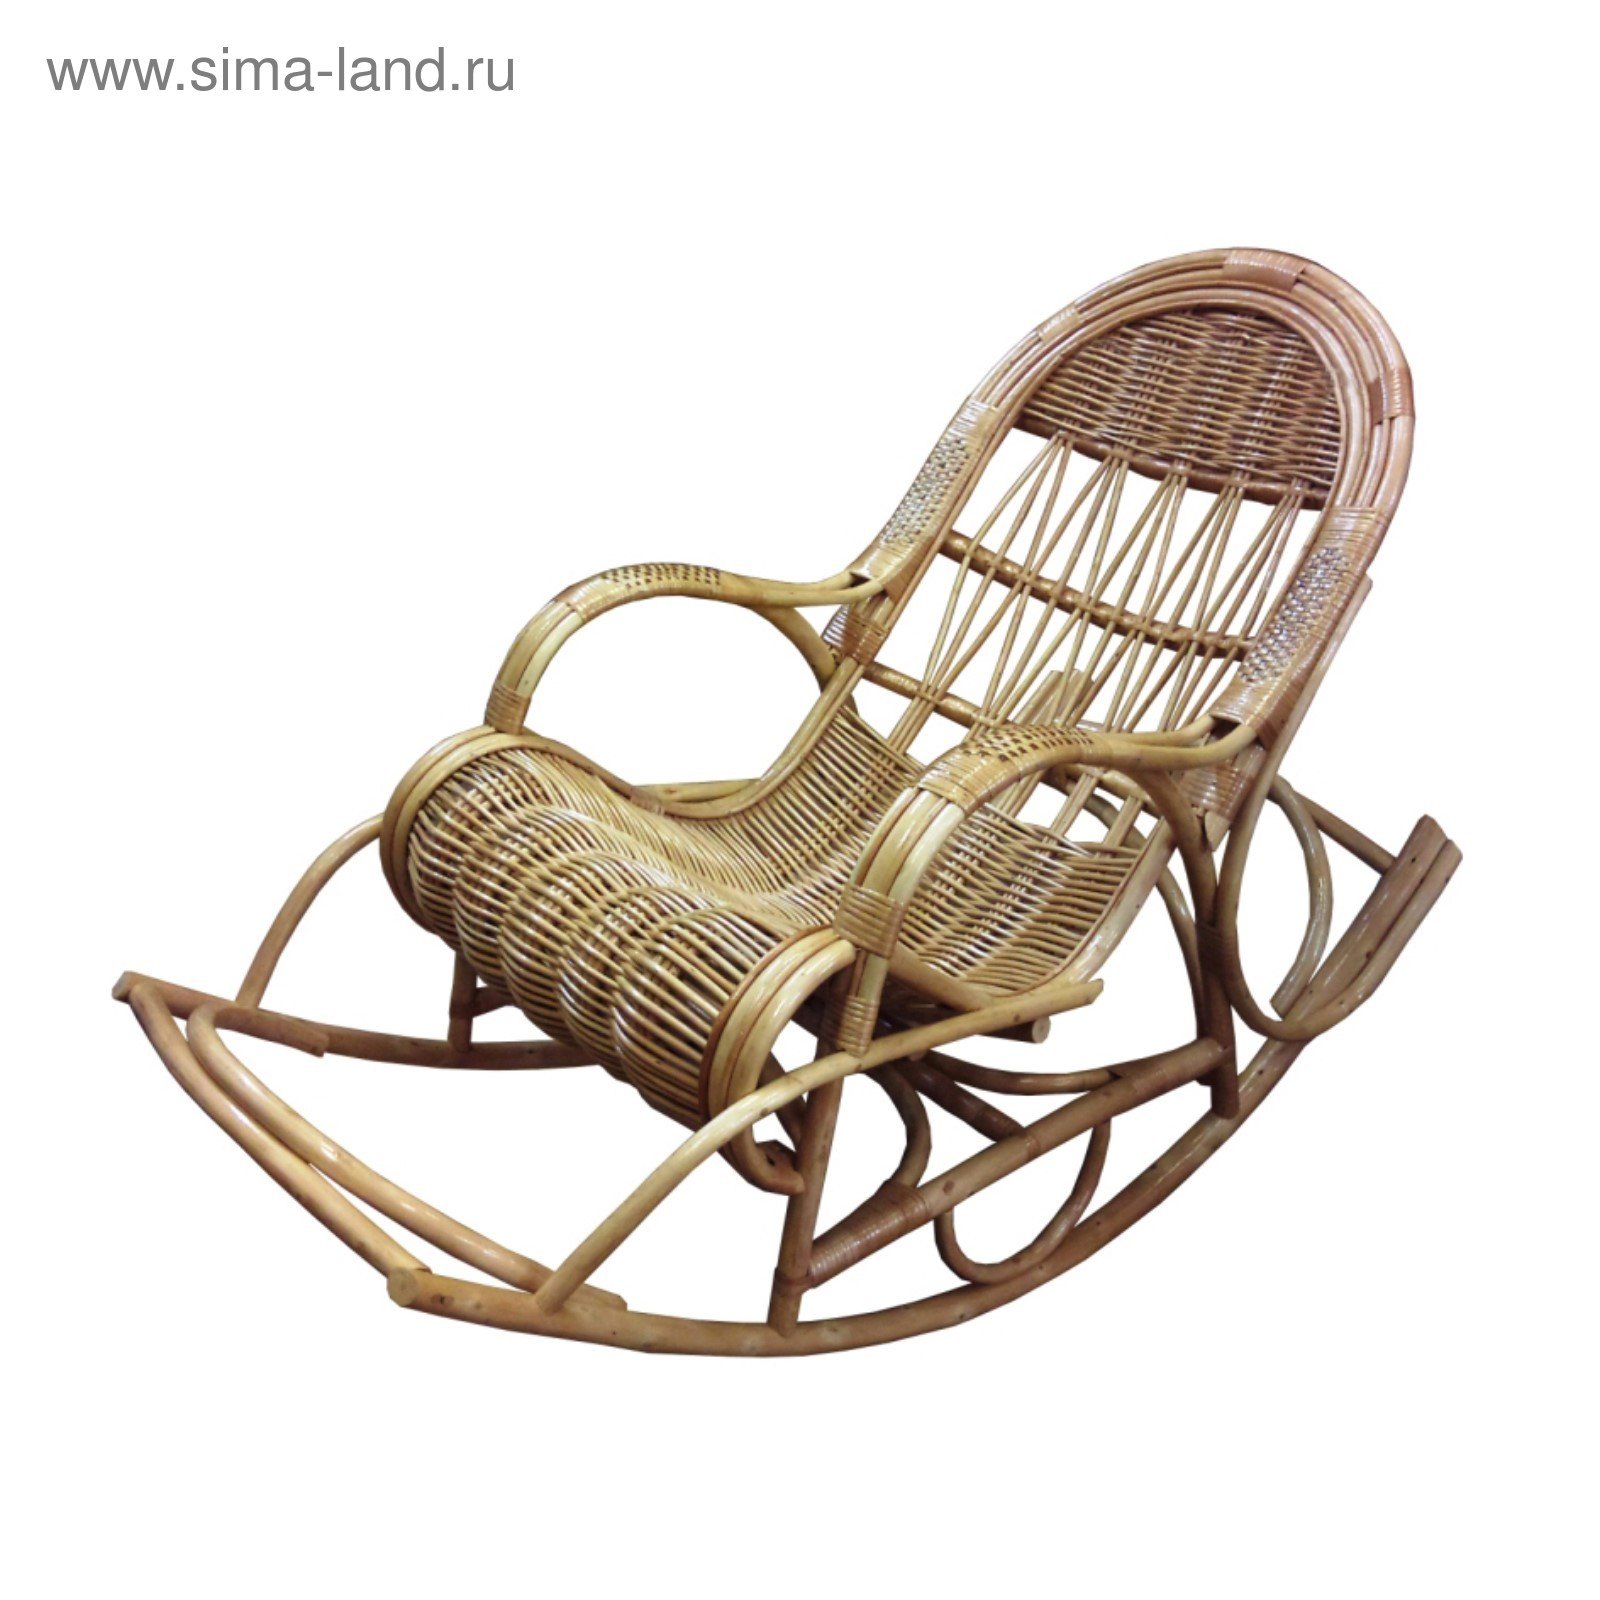 Кресло качалка купить от производителя. Кресло качалка Ивушка. Кресло-качалка Dynasty. Ивовая лоза кресло качалка. Кресло-качалка wkdj2022121801, 85х90х65 см.